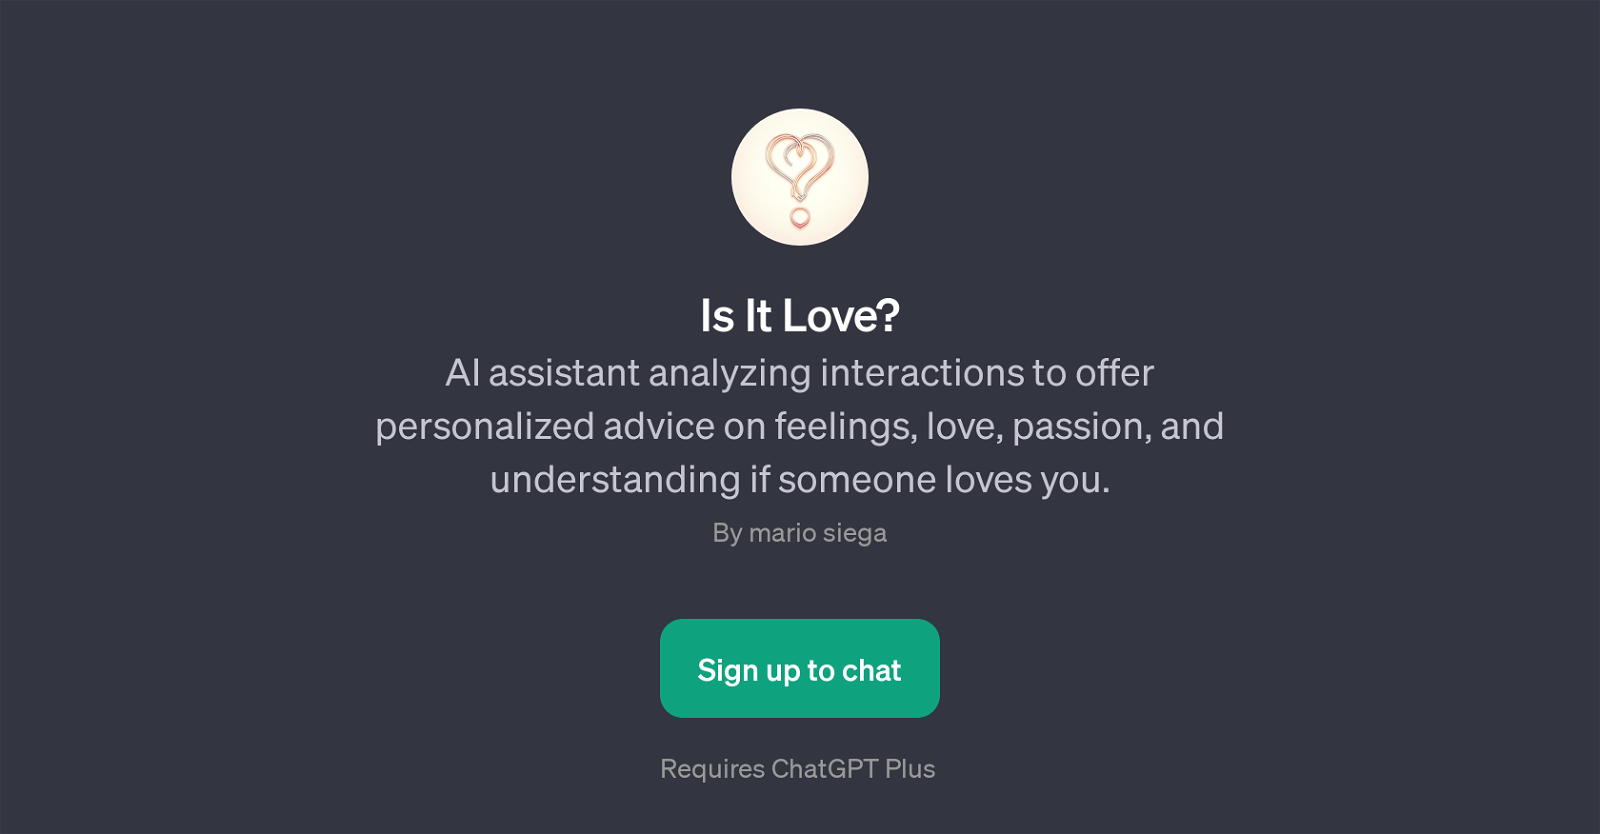 Is It Love? website